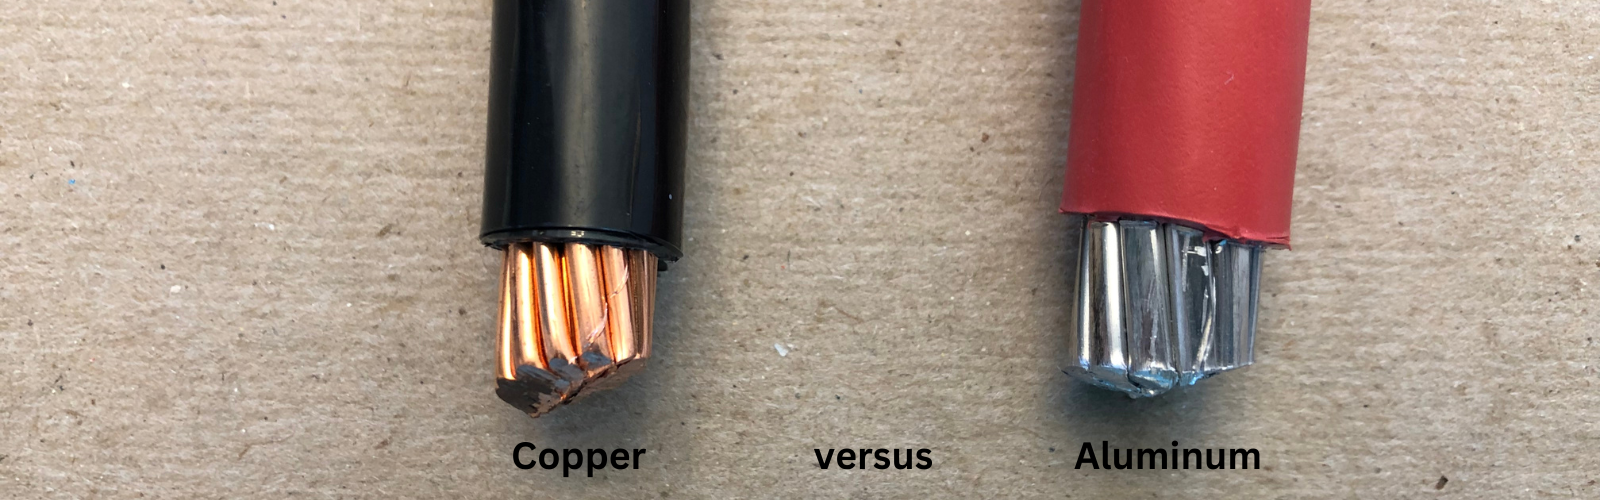 Copper versus Aluminum wiring